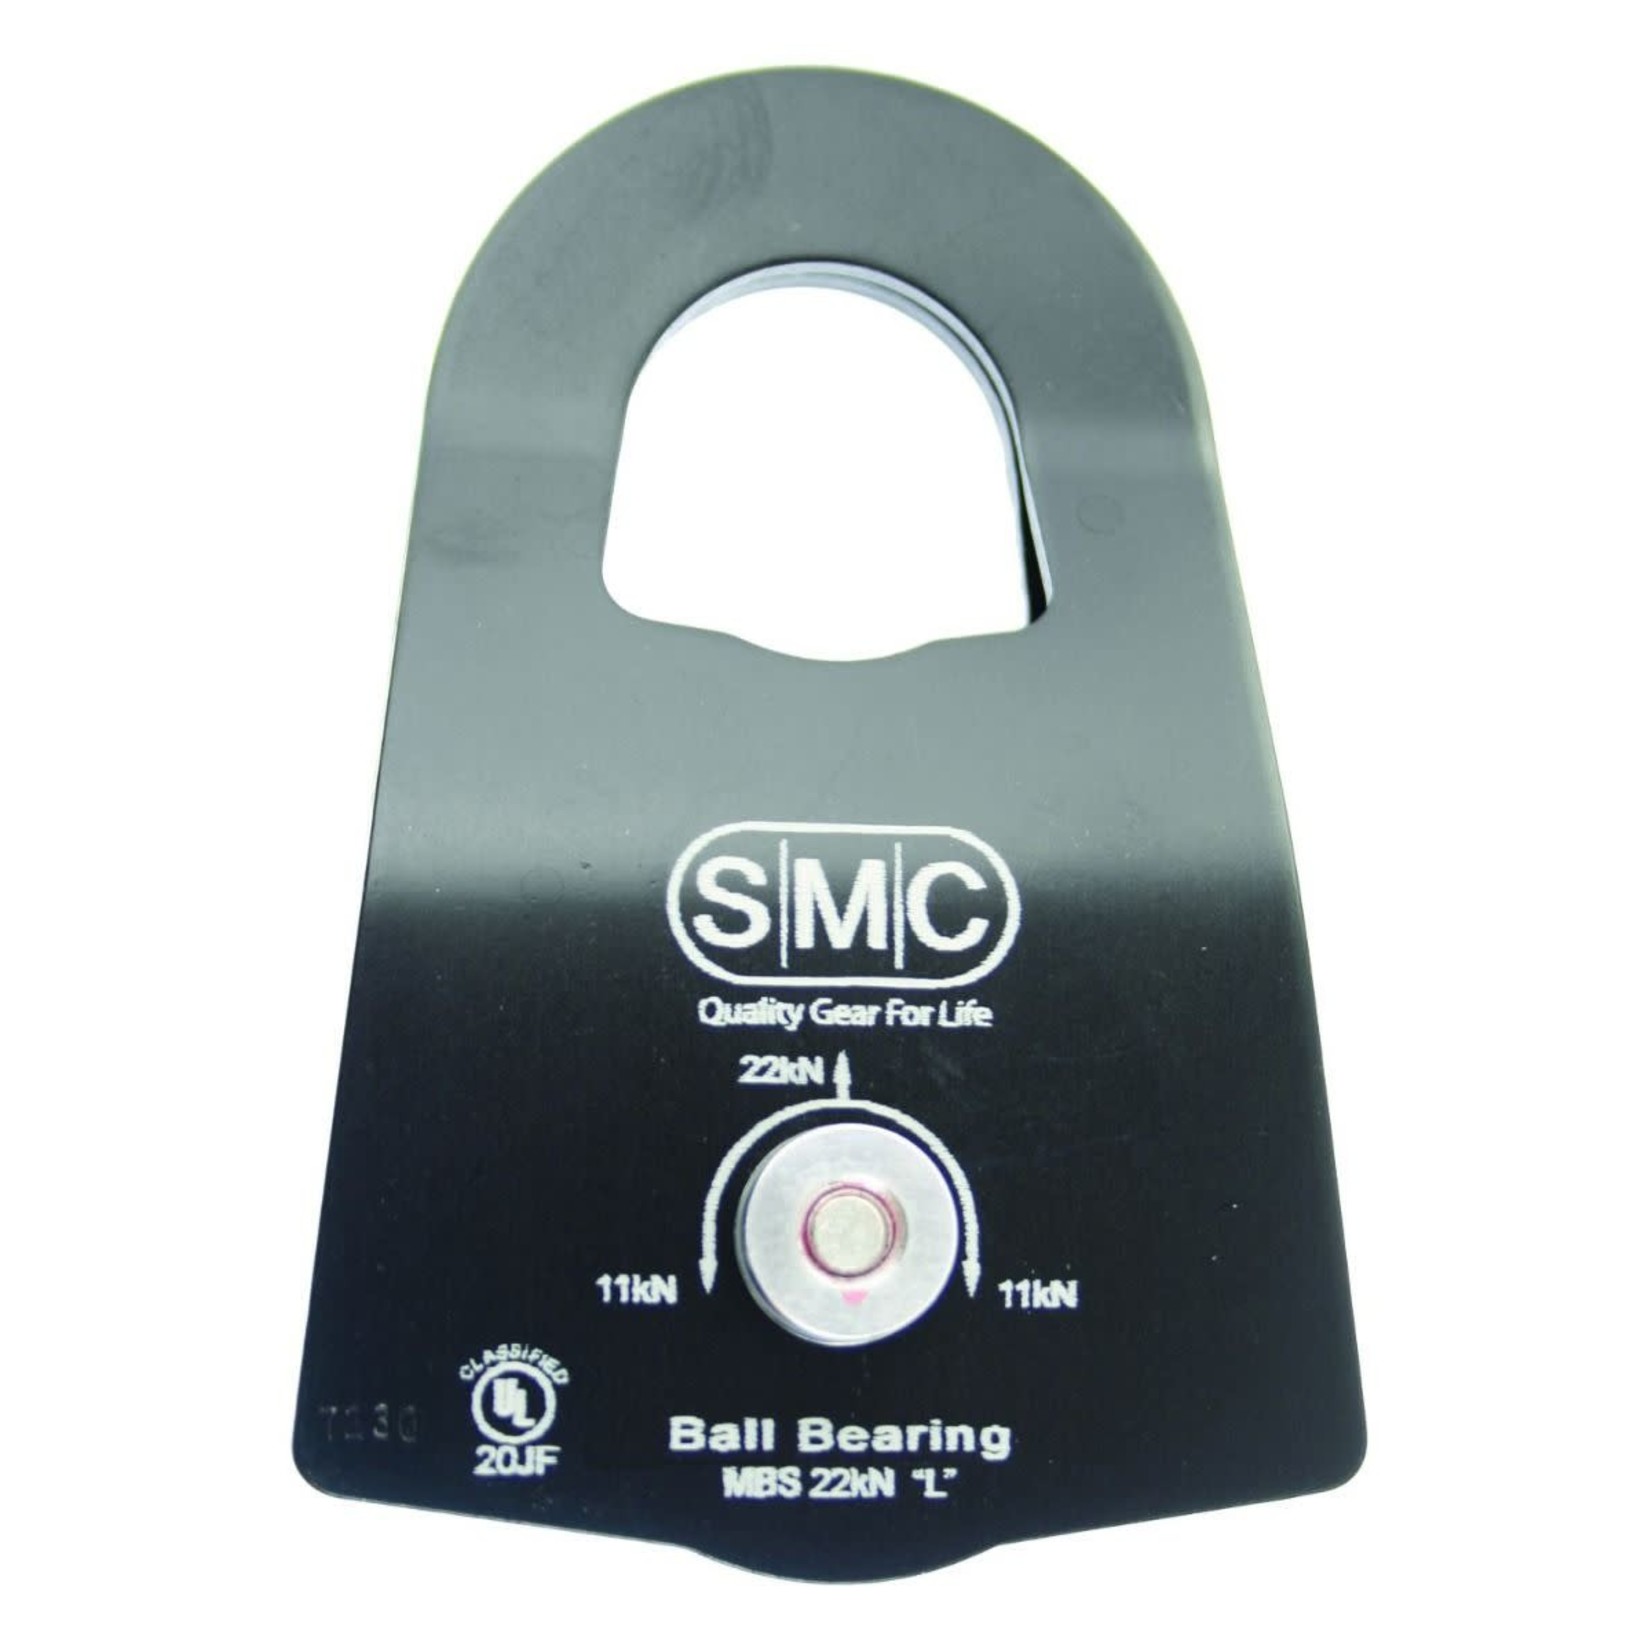 SMC SMC Micro PMP Pulley